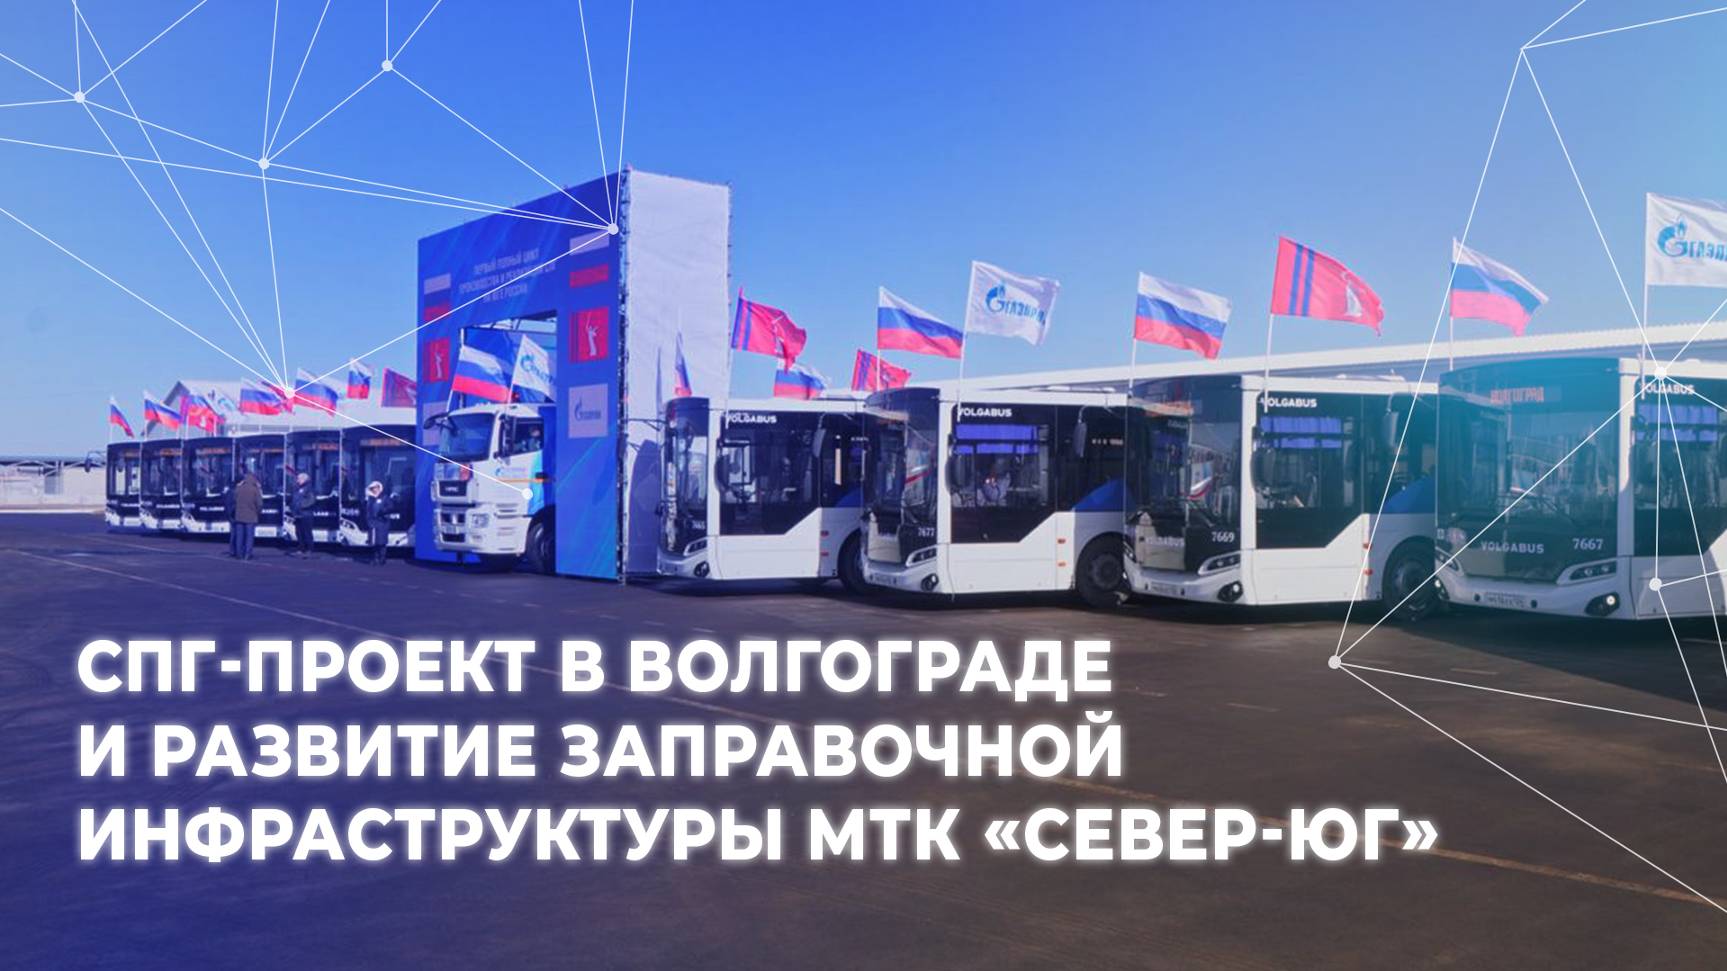 СПГ-проект в Волгограде и развитие заправочной инфраструктуры МТК «Север-Юг»